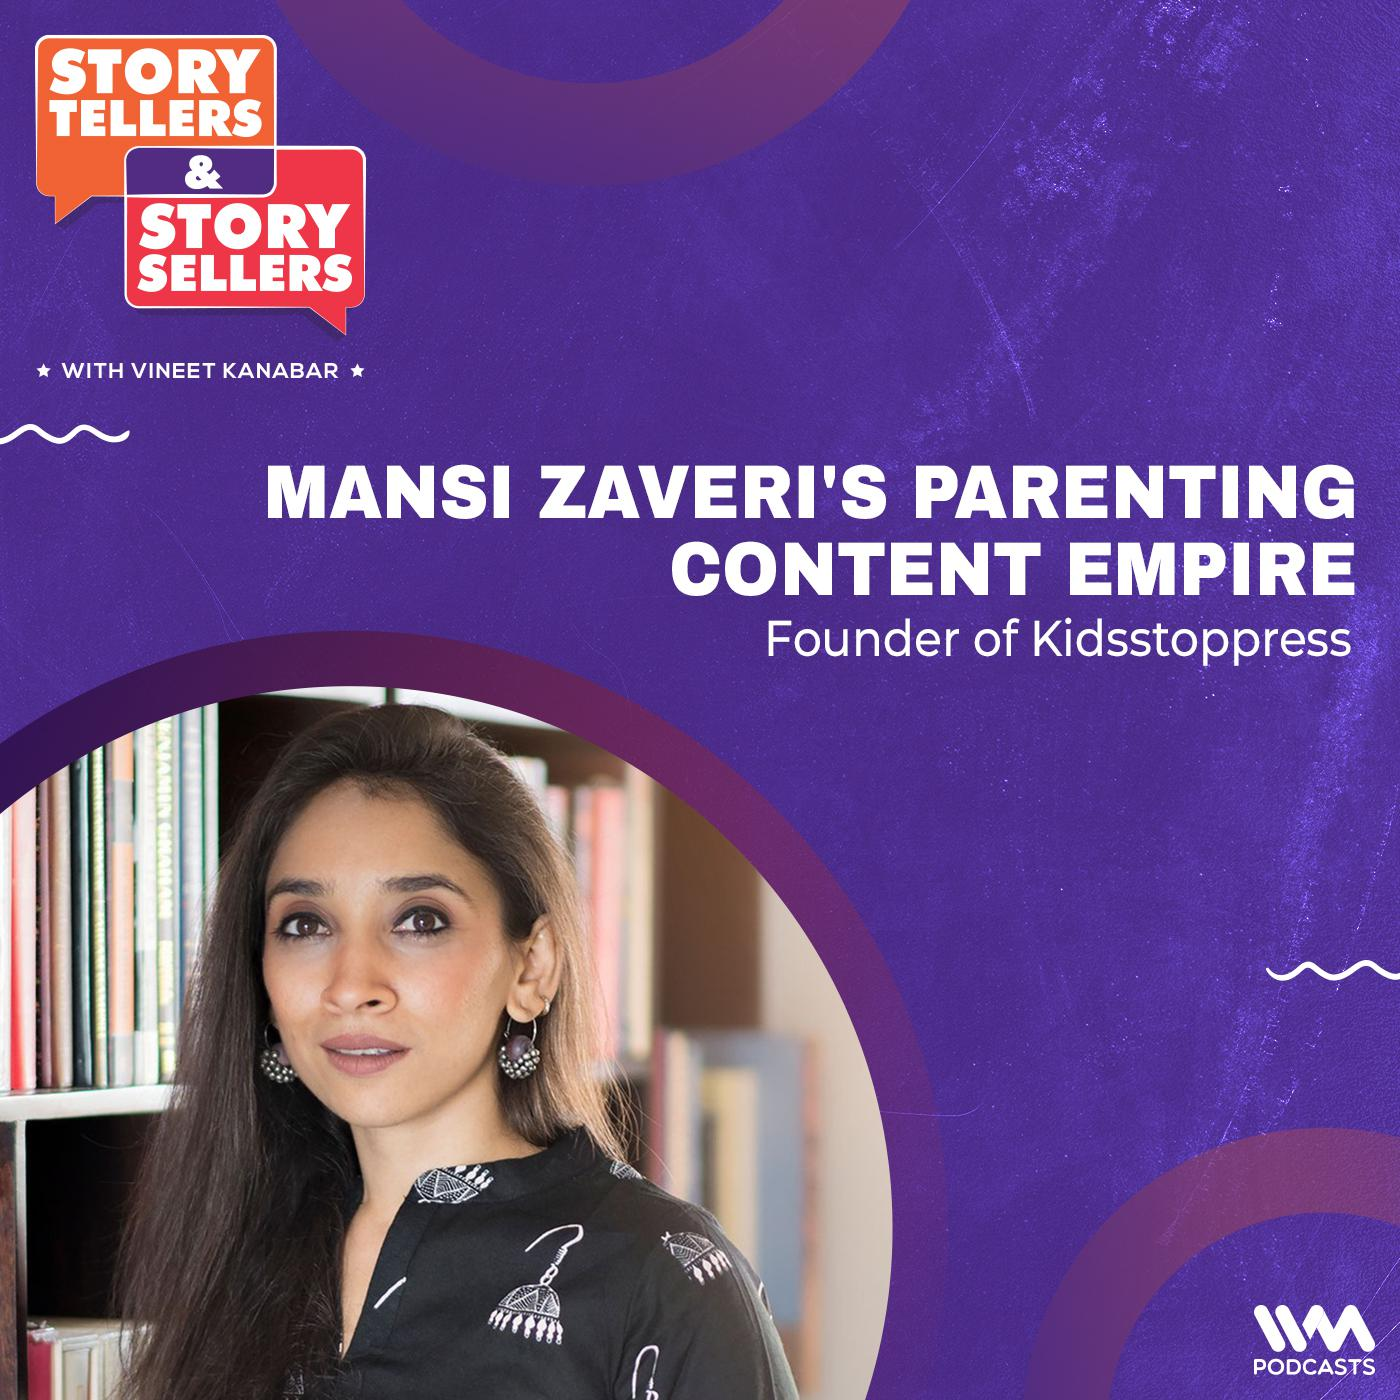 Mansi Zaveri's Parenting Content Empire